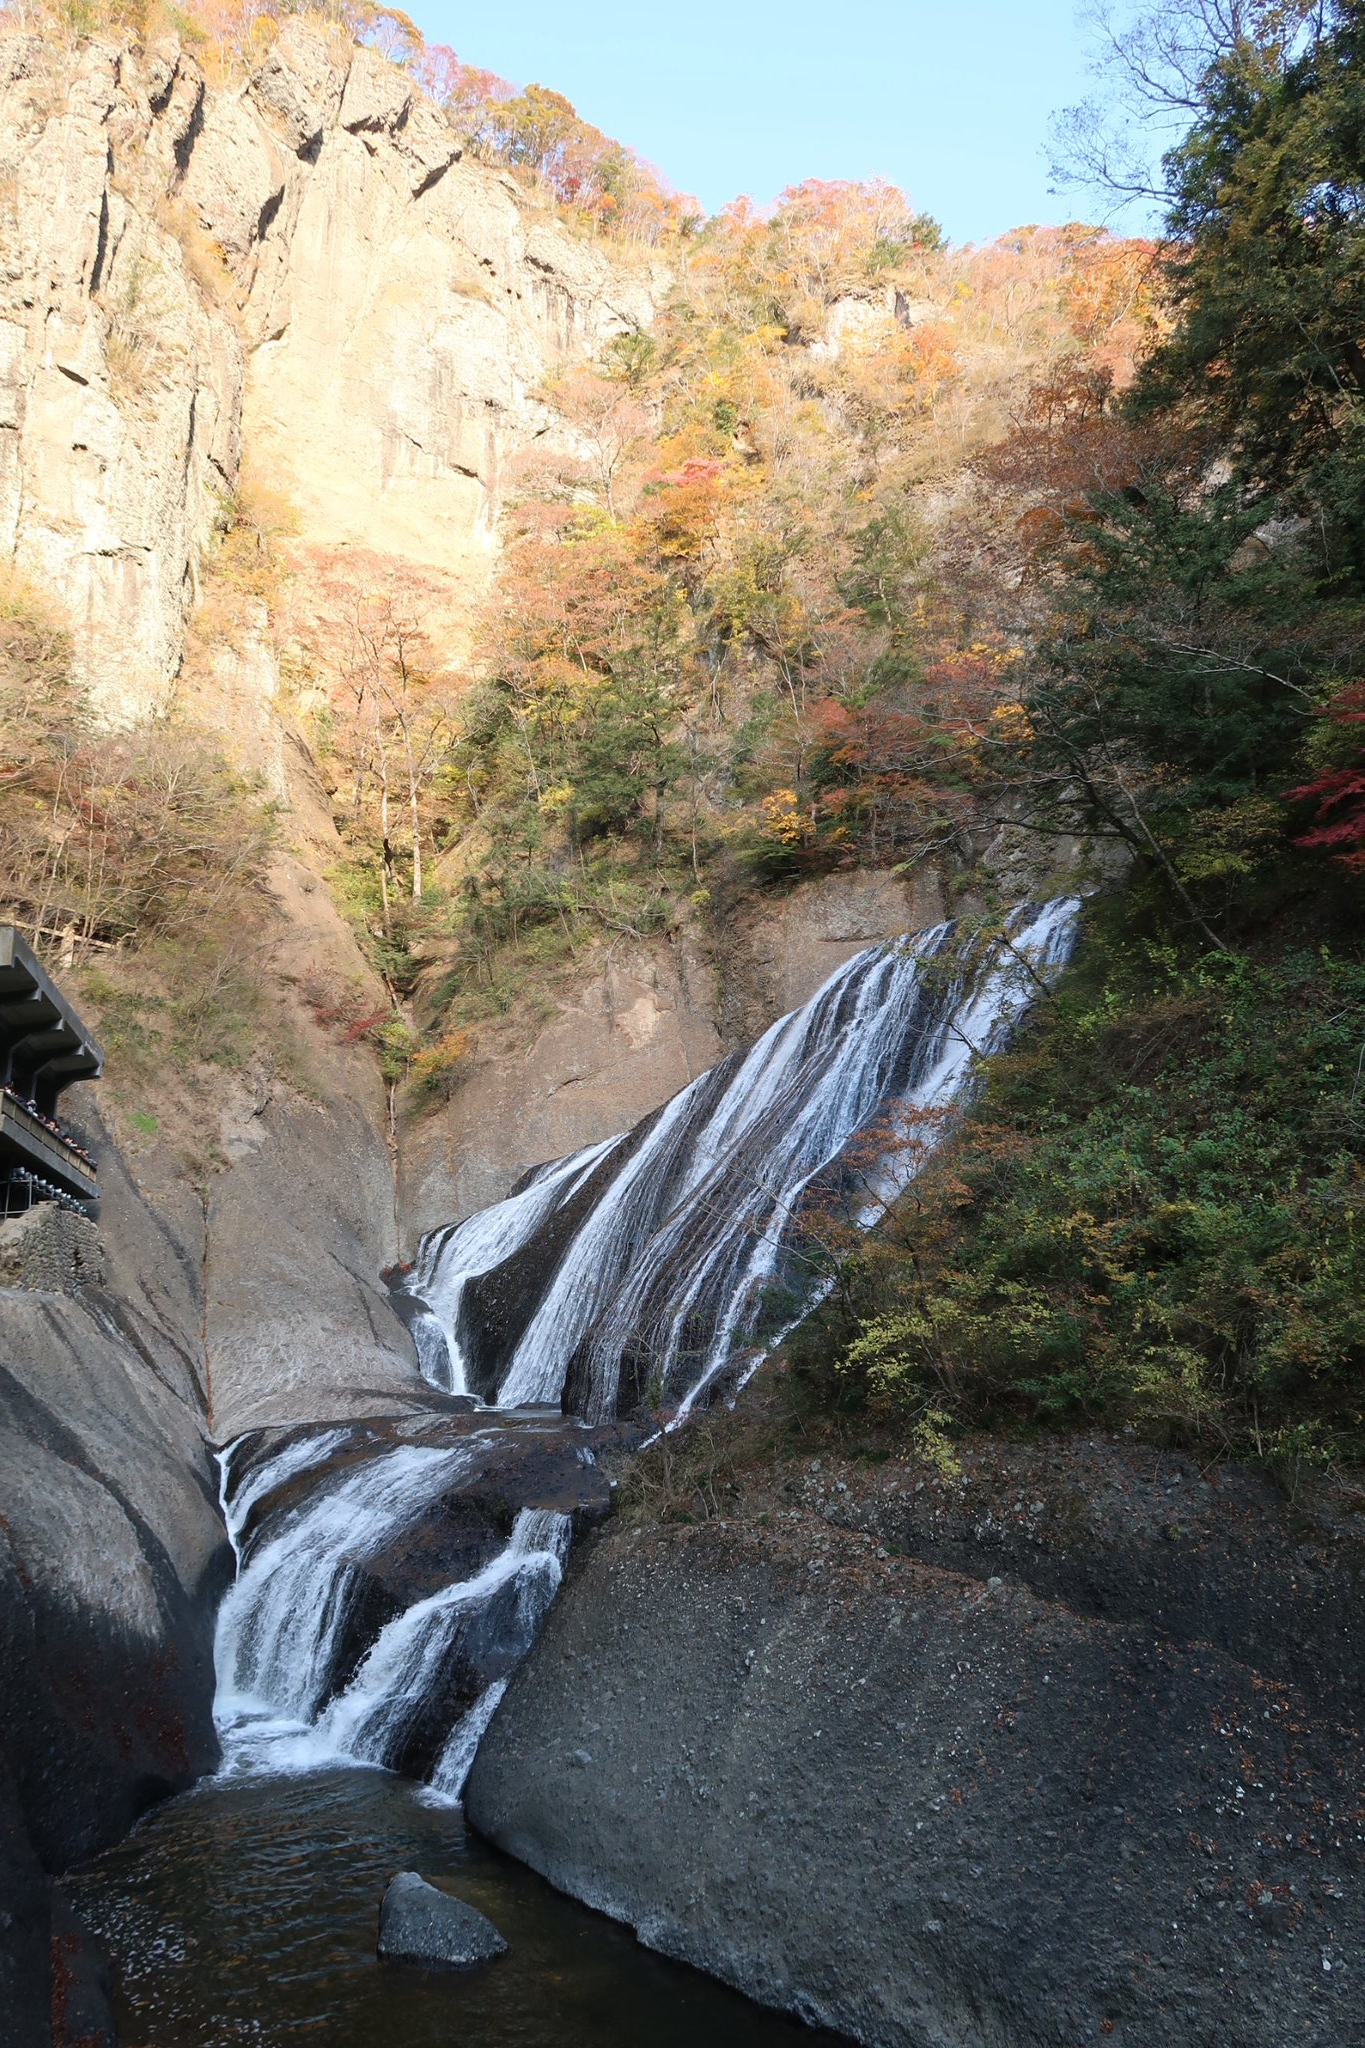 ｵｲ ﾀｶｲ 11月16日 紅葉を見に袋田の滝へ 袋田の滝は紅葉終わりかけだったけど 花貫渓谷がキレイだった T Co Lytnpsxwjl Twitter